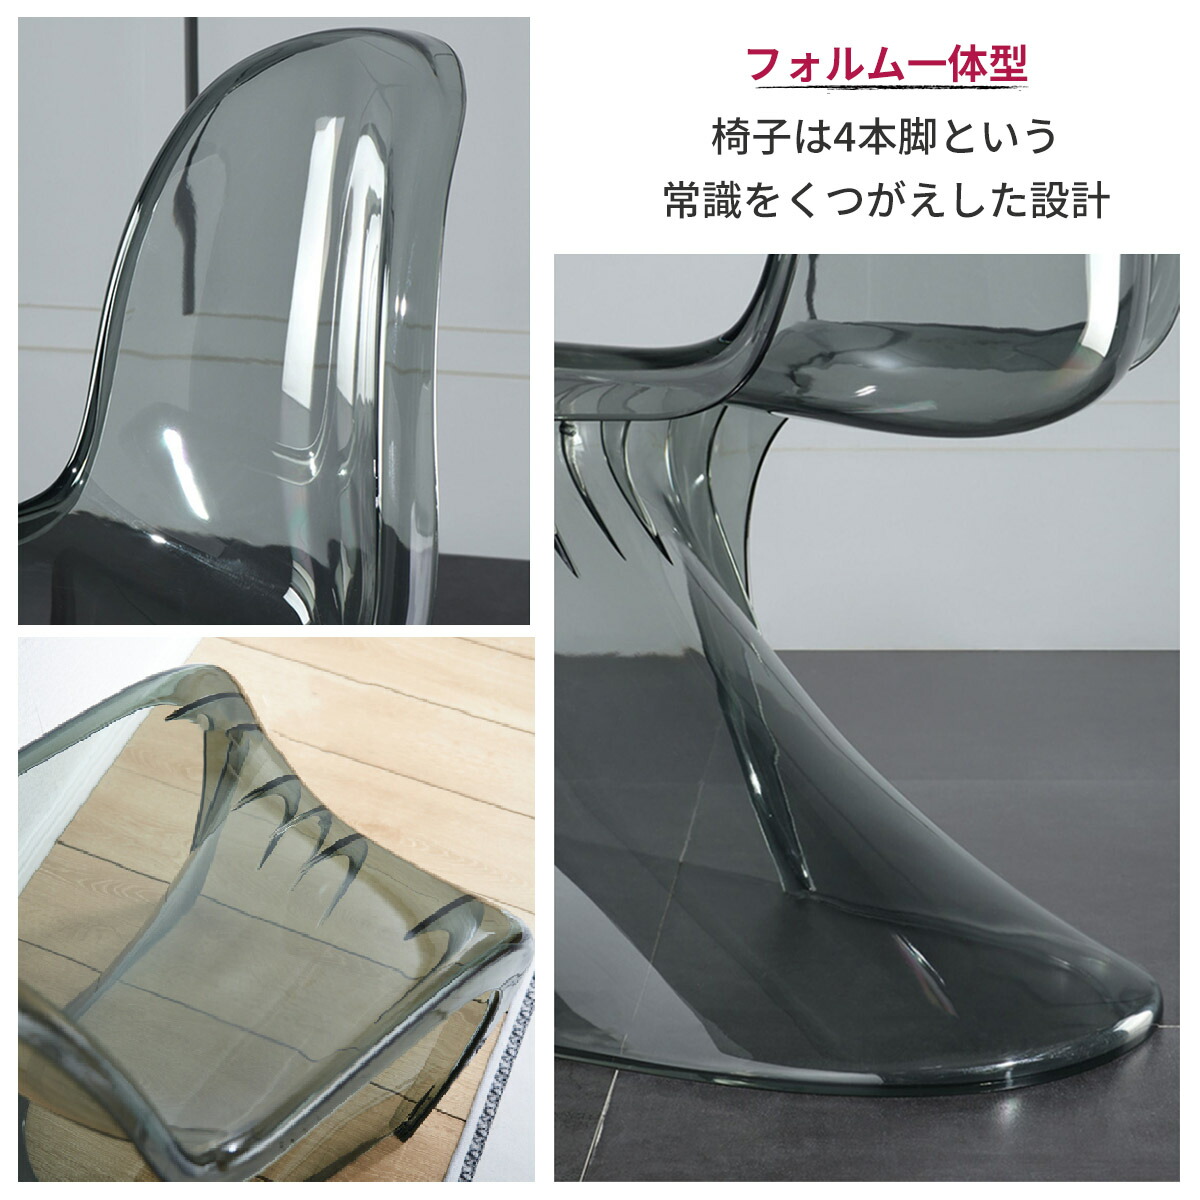 VeroMan クリア椅子 透明 チェア 一体成型 デザイナーズチェア スツール ユニーク おしゃれ 韓国クリア家具 韓国インテリア  :45731342111:VEROMAN-JP - 通販 - Yahoo!ショッピング